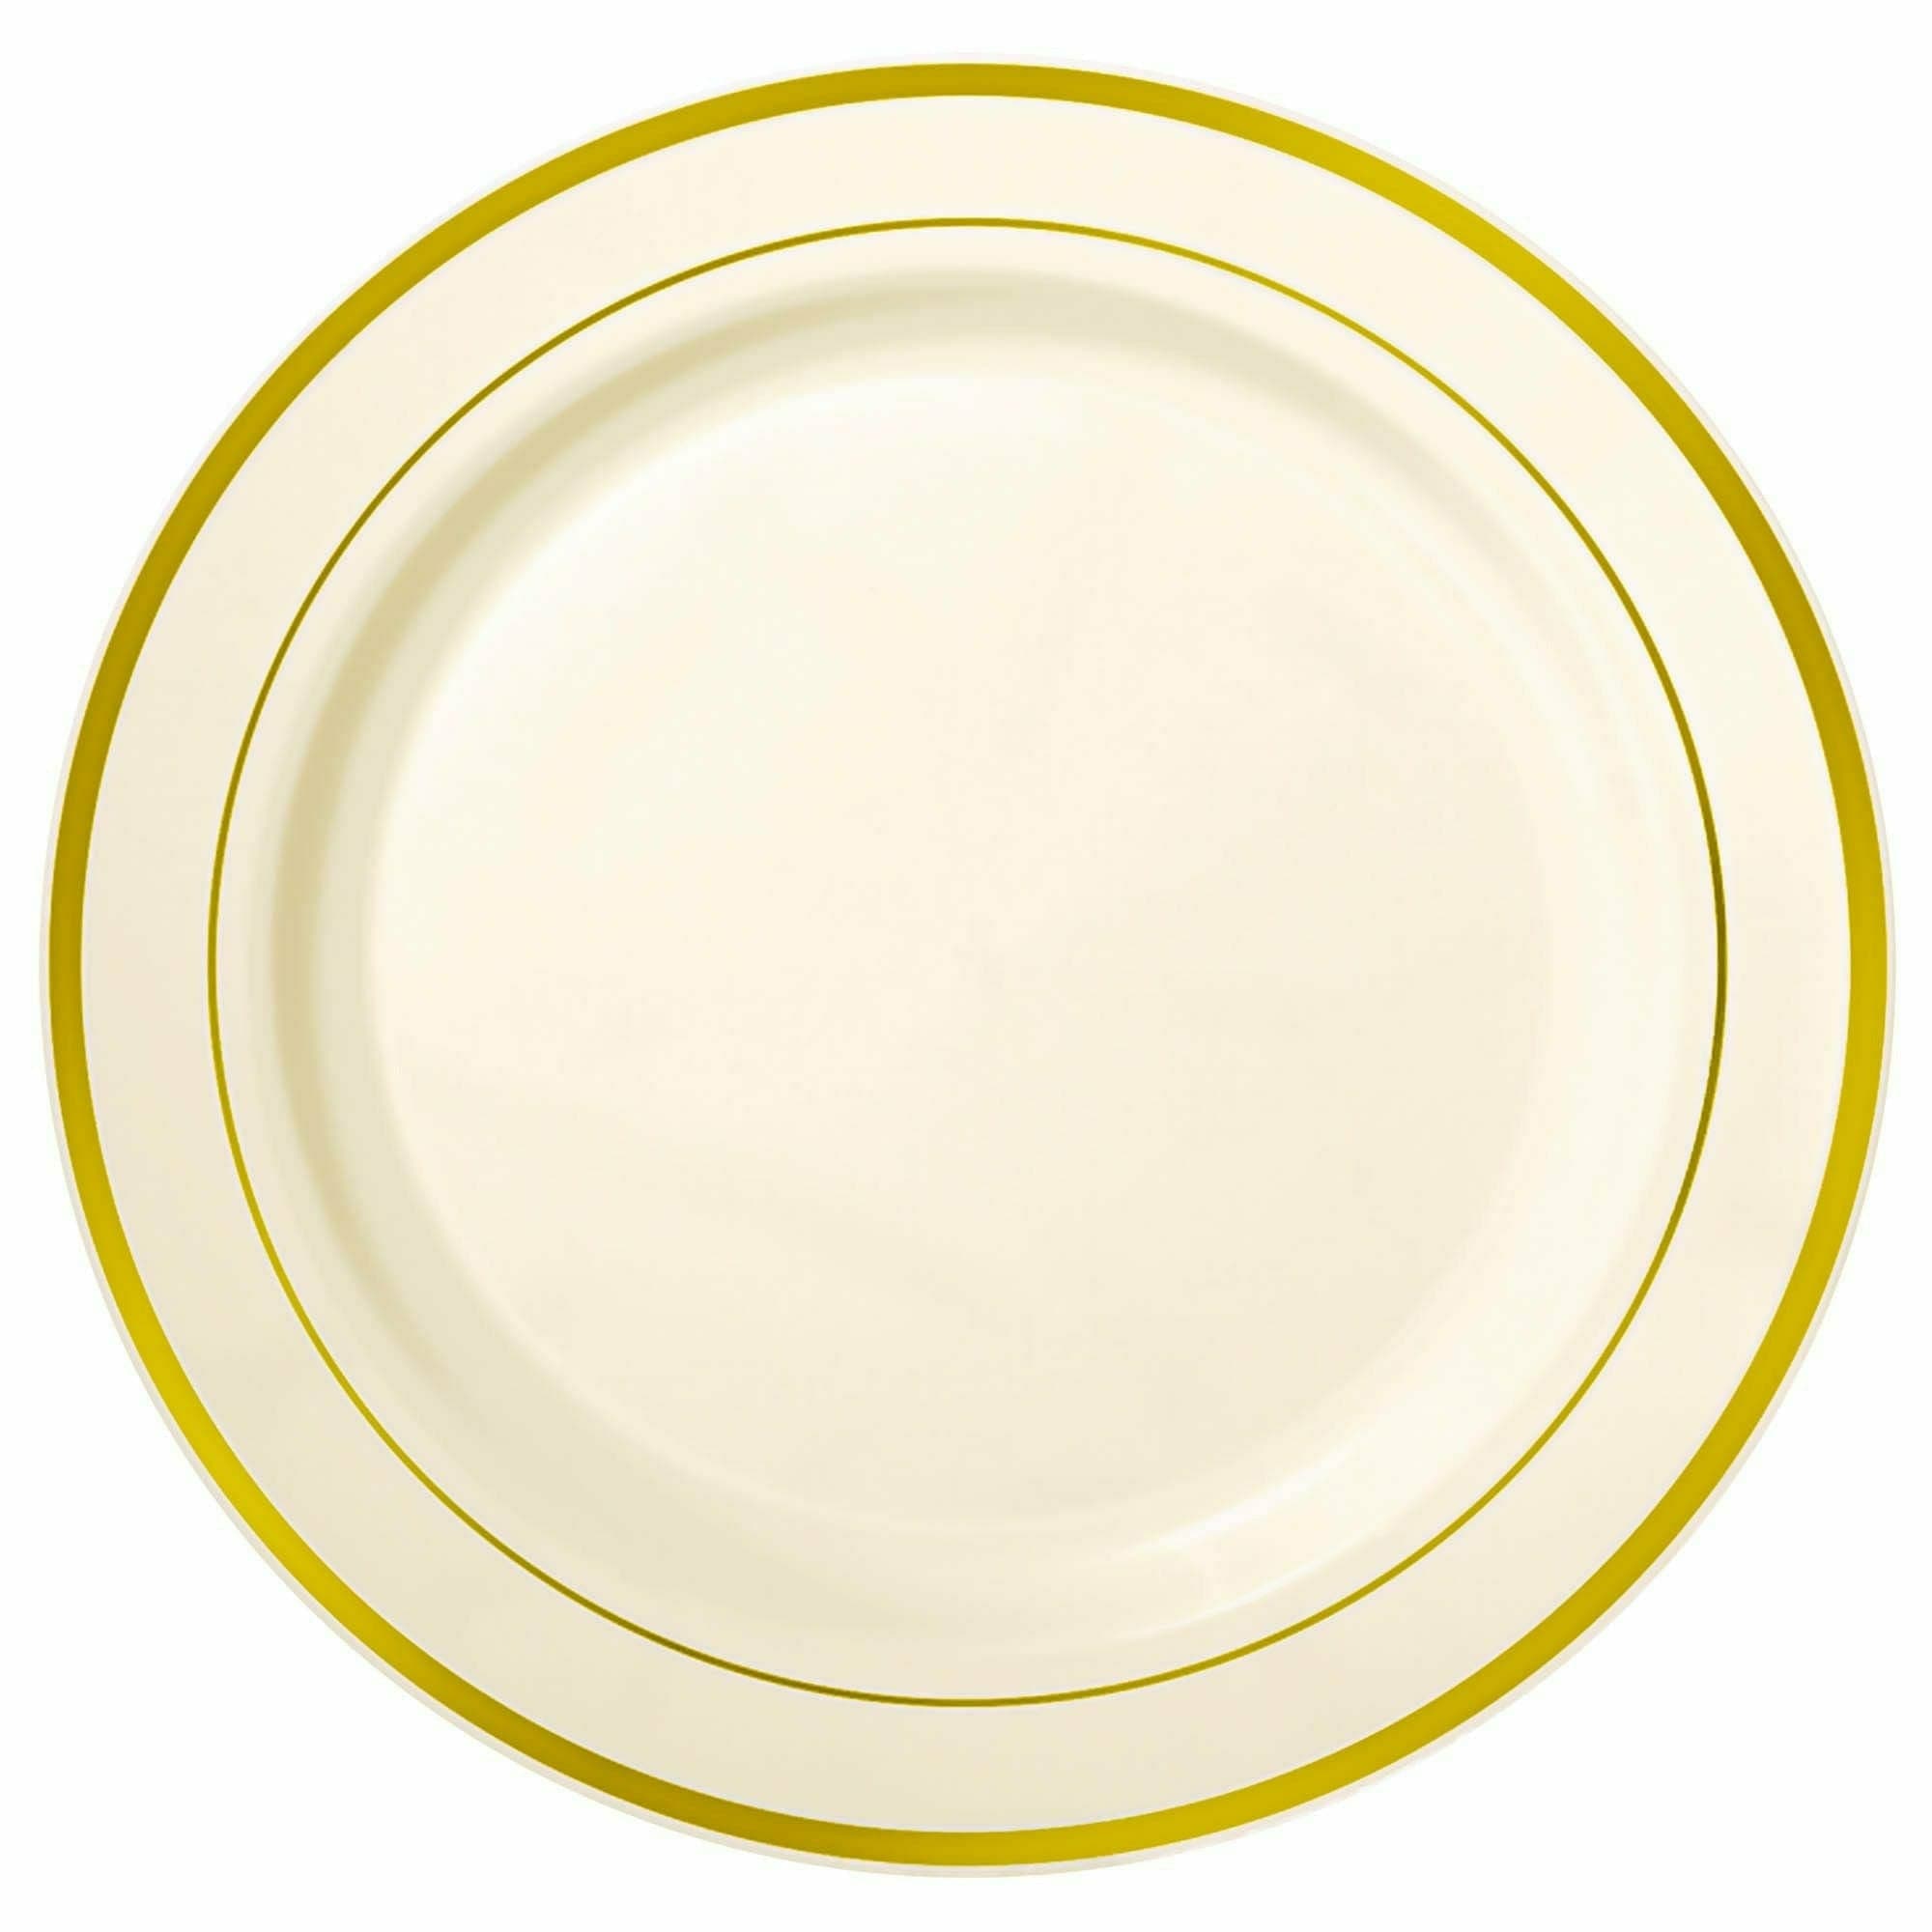 Amscan BASIC Premium Gold Trimmed Plastic Cream Plates